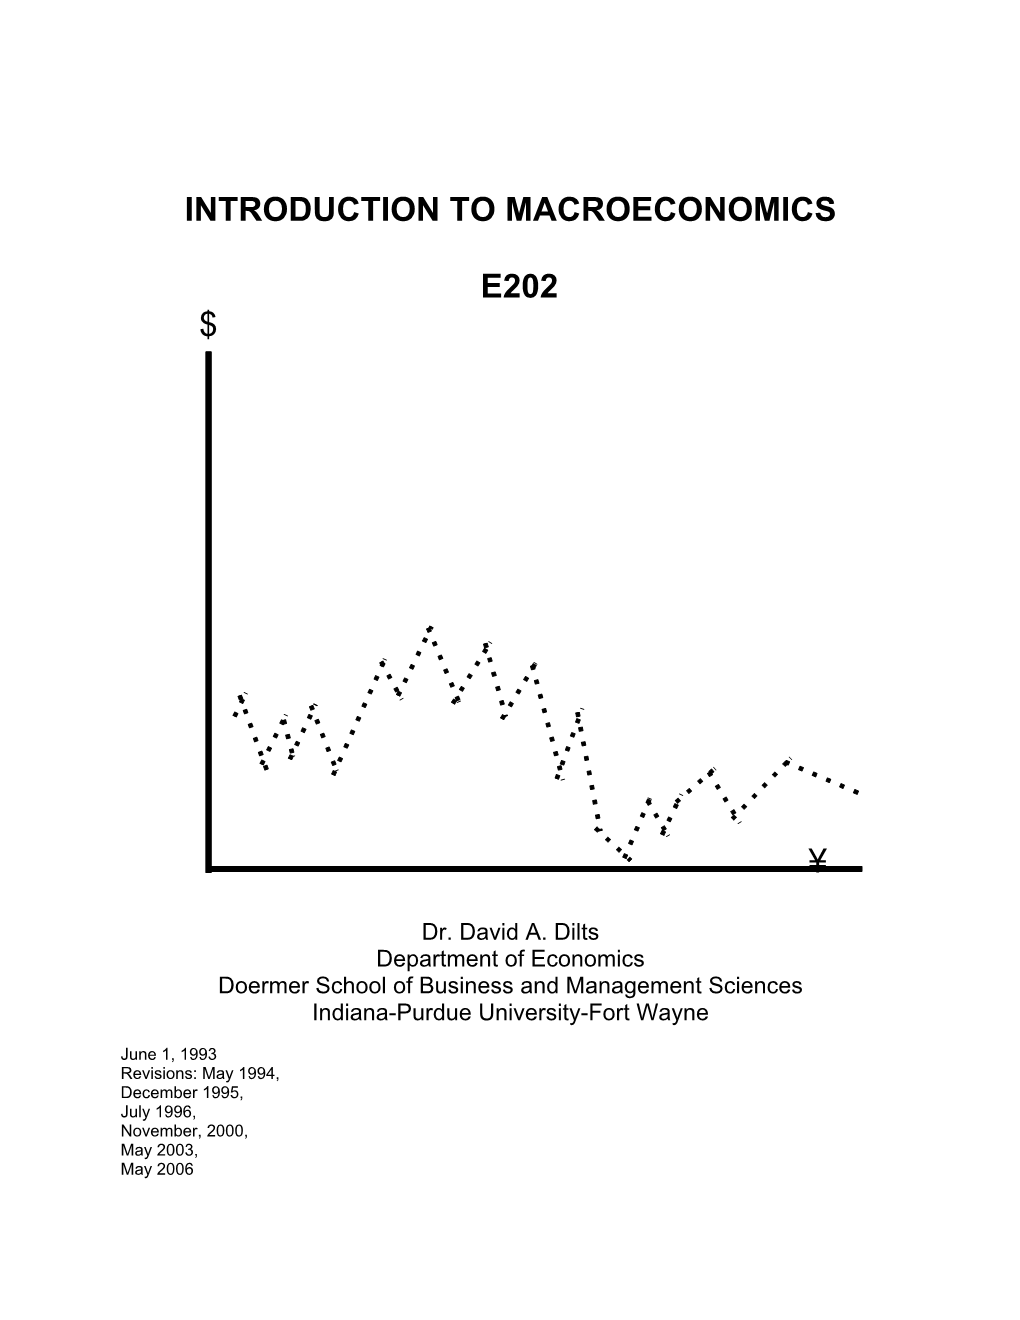 Introduction to Macroeconomics E202